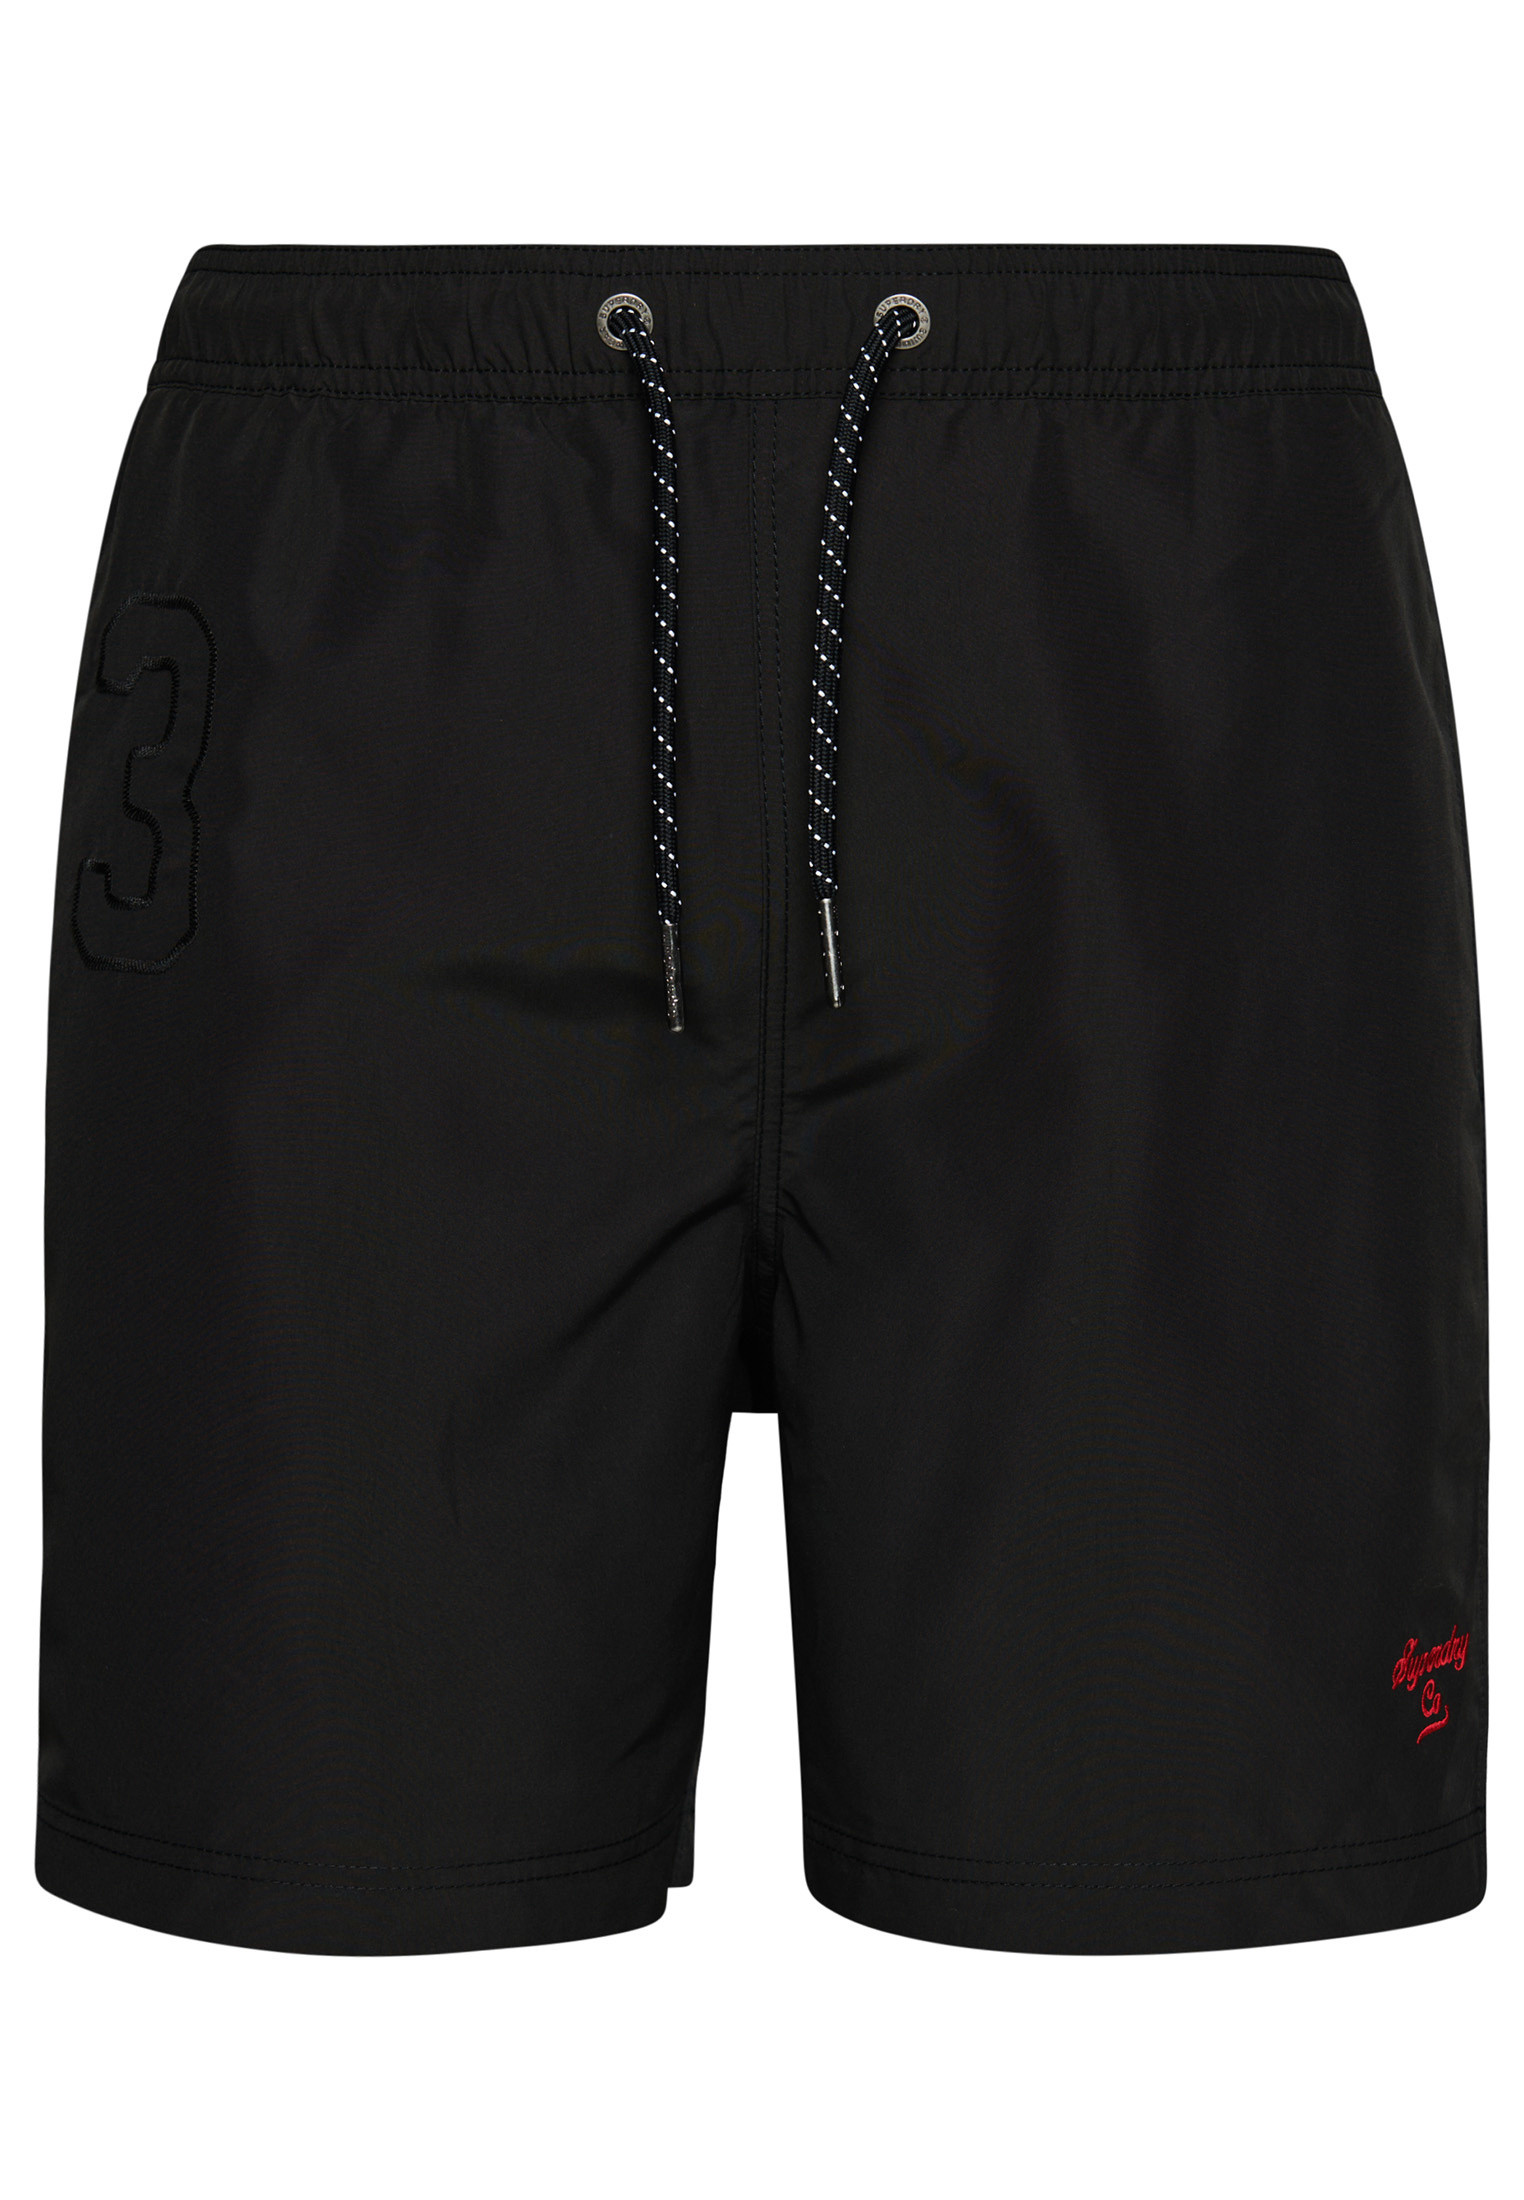 Superdry numbered boxer shorts, Black, large image number 0